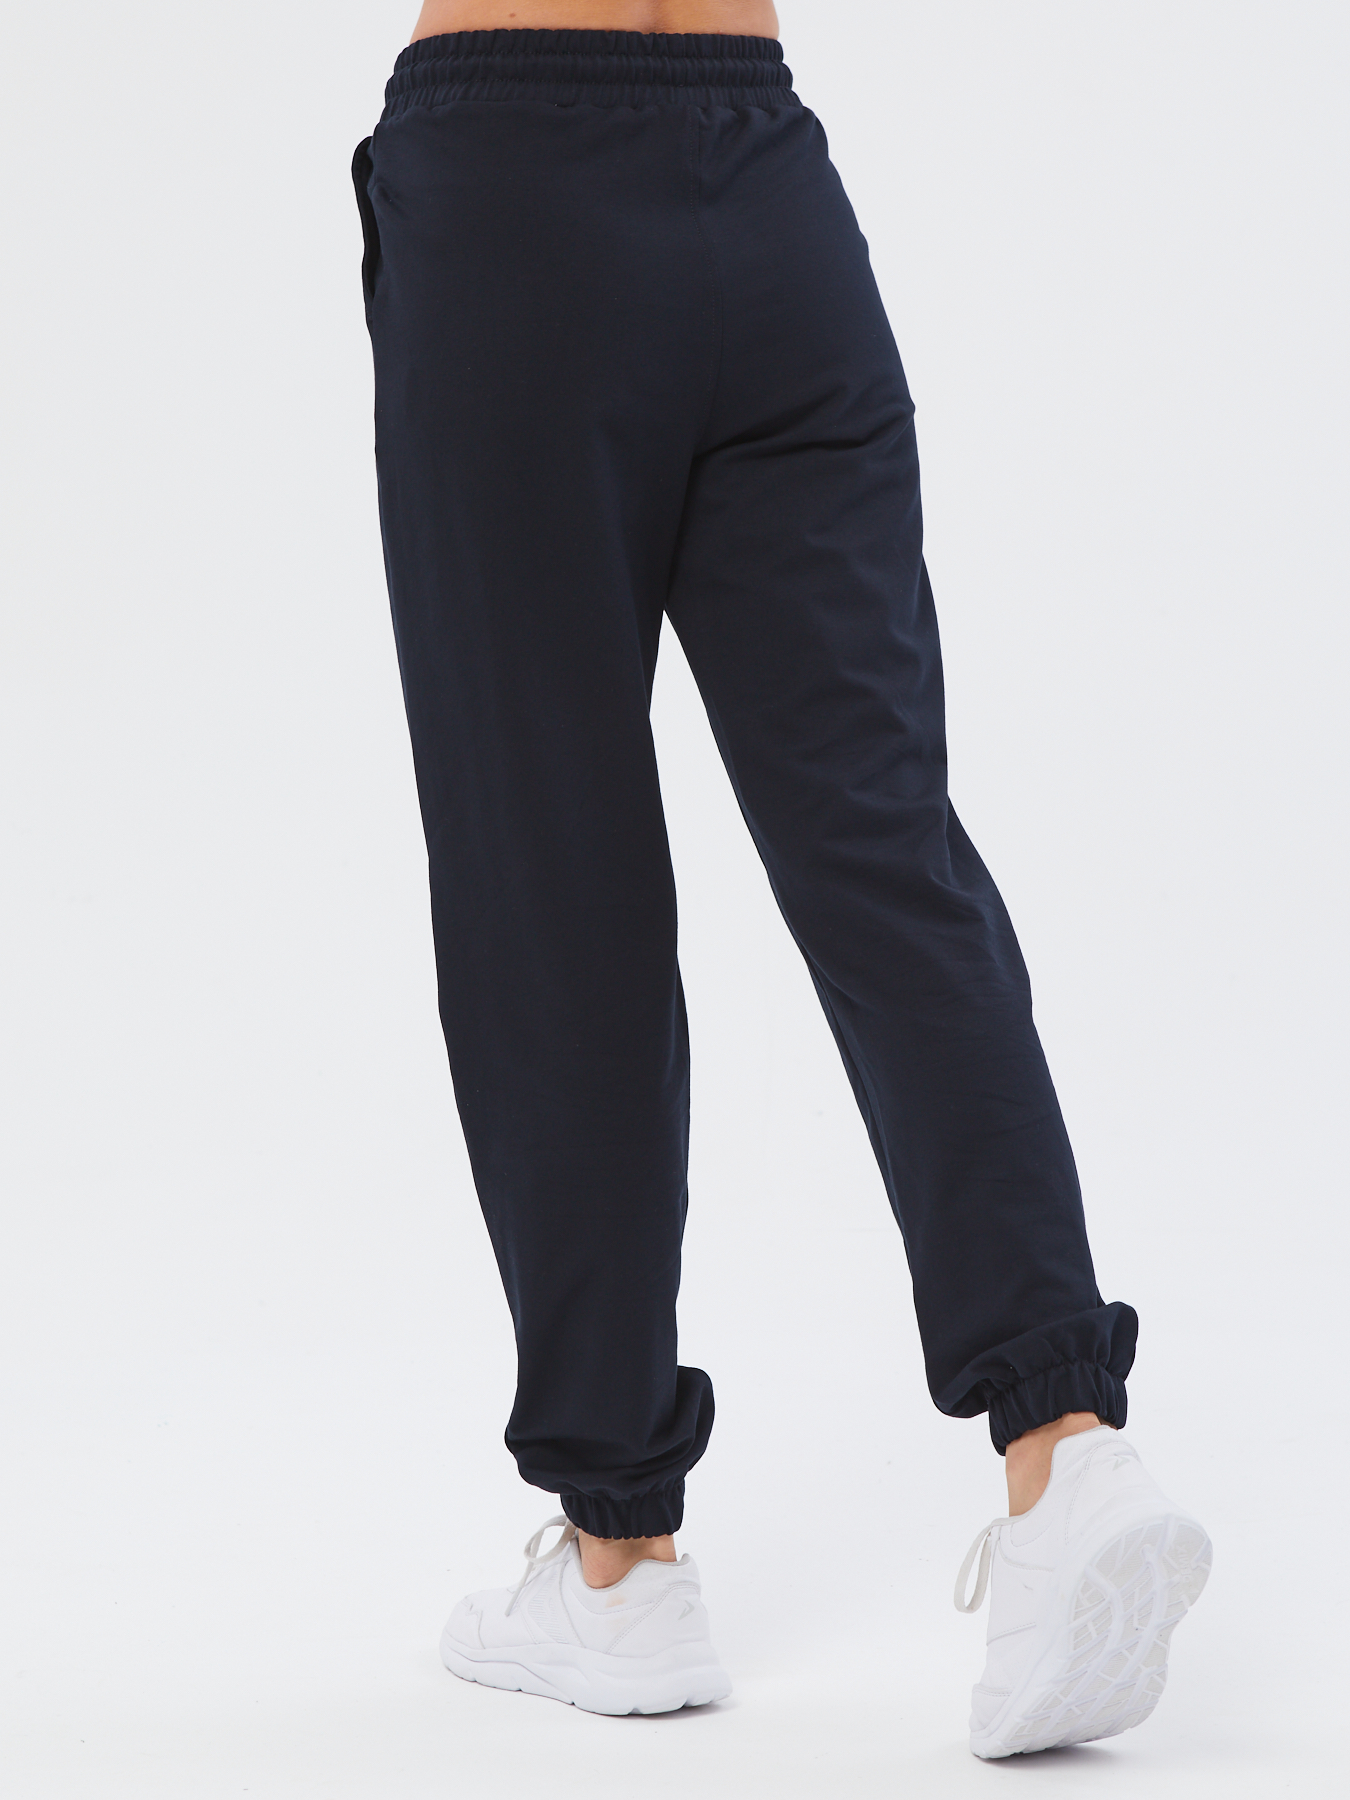 Спортивные брюки женские Still-expert б5 синие 50/150-165